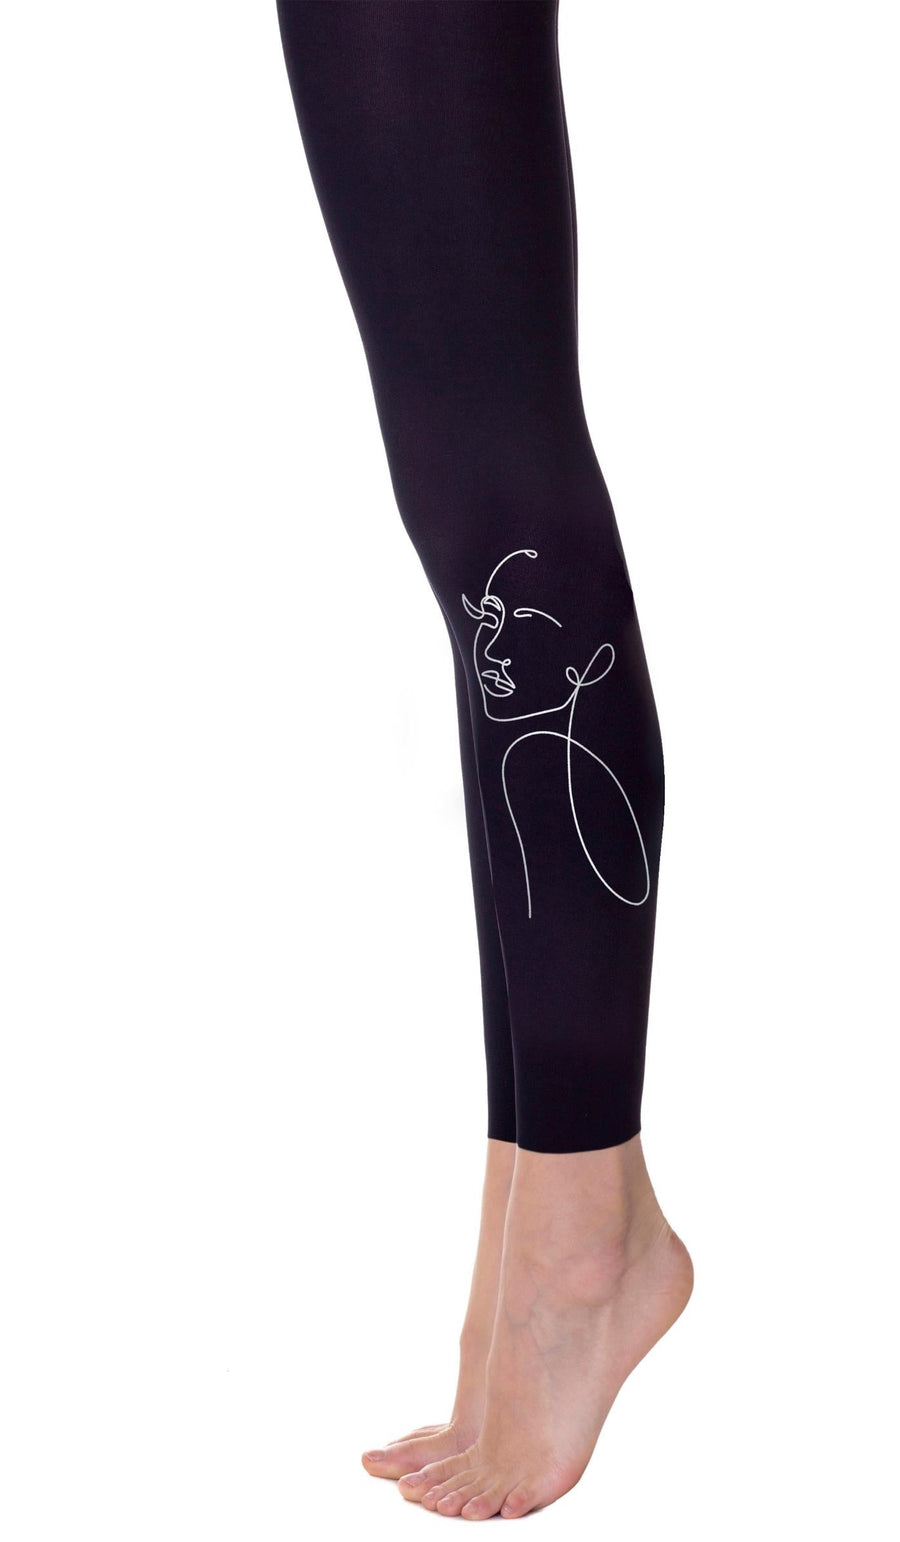 גרביון בצבע שחור ללא כף רגל עם הדפס סילואט